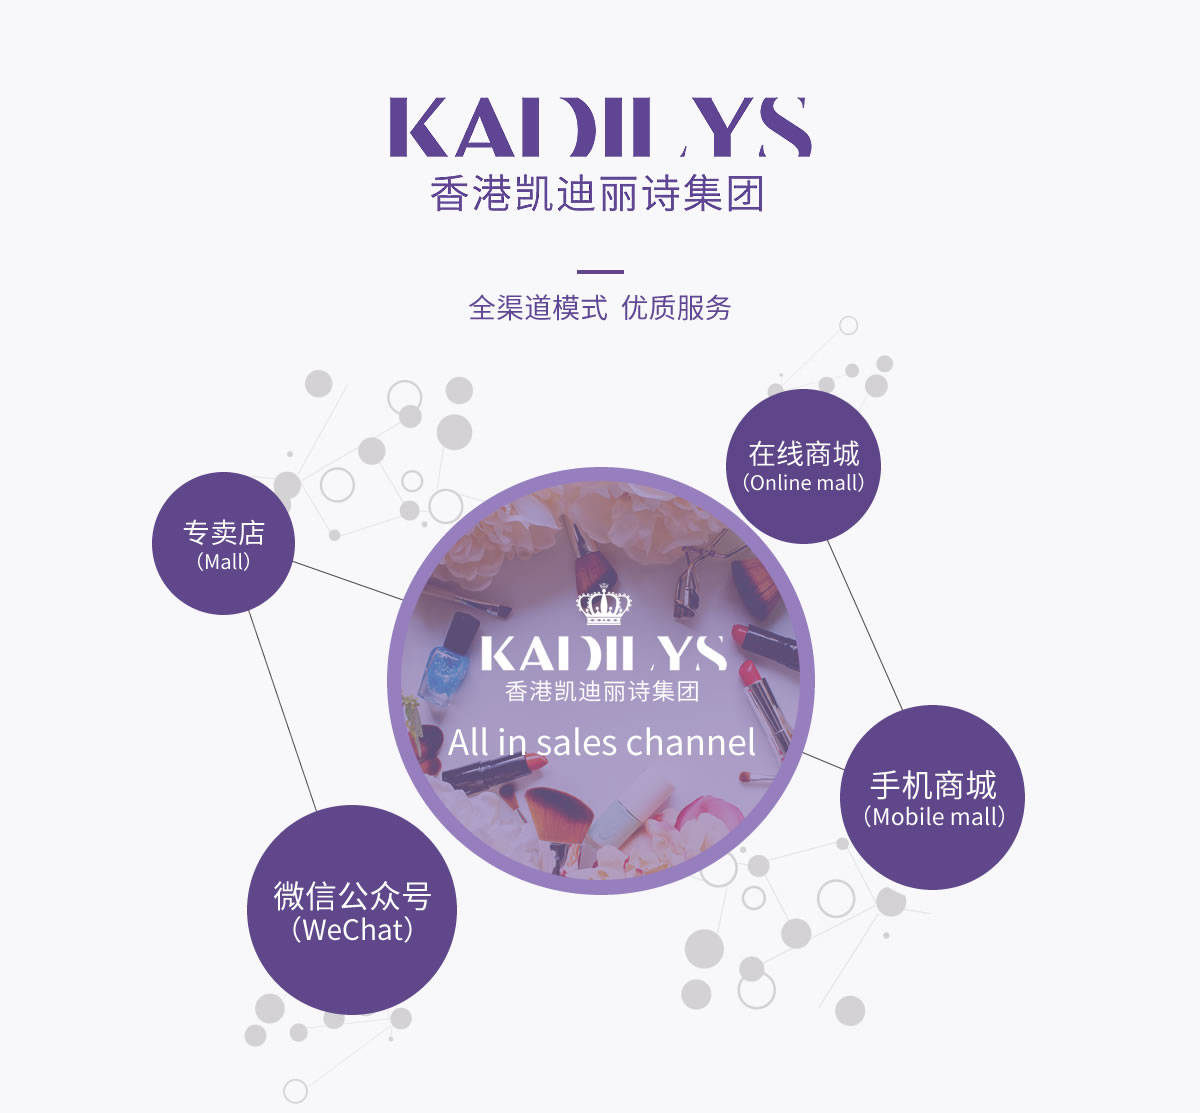 香港凯迪丽诗集团率先在业界内开创线上购物线下体验的新零售营销模式